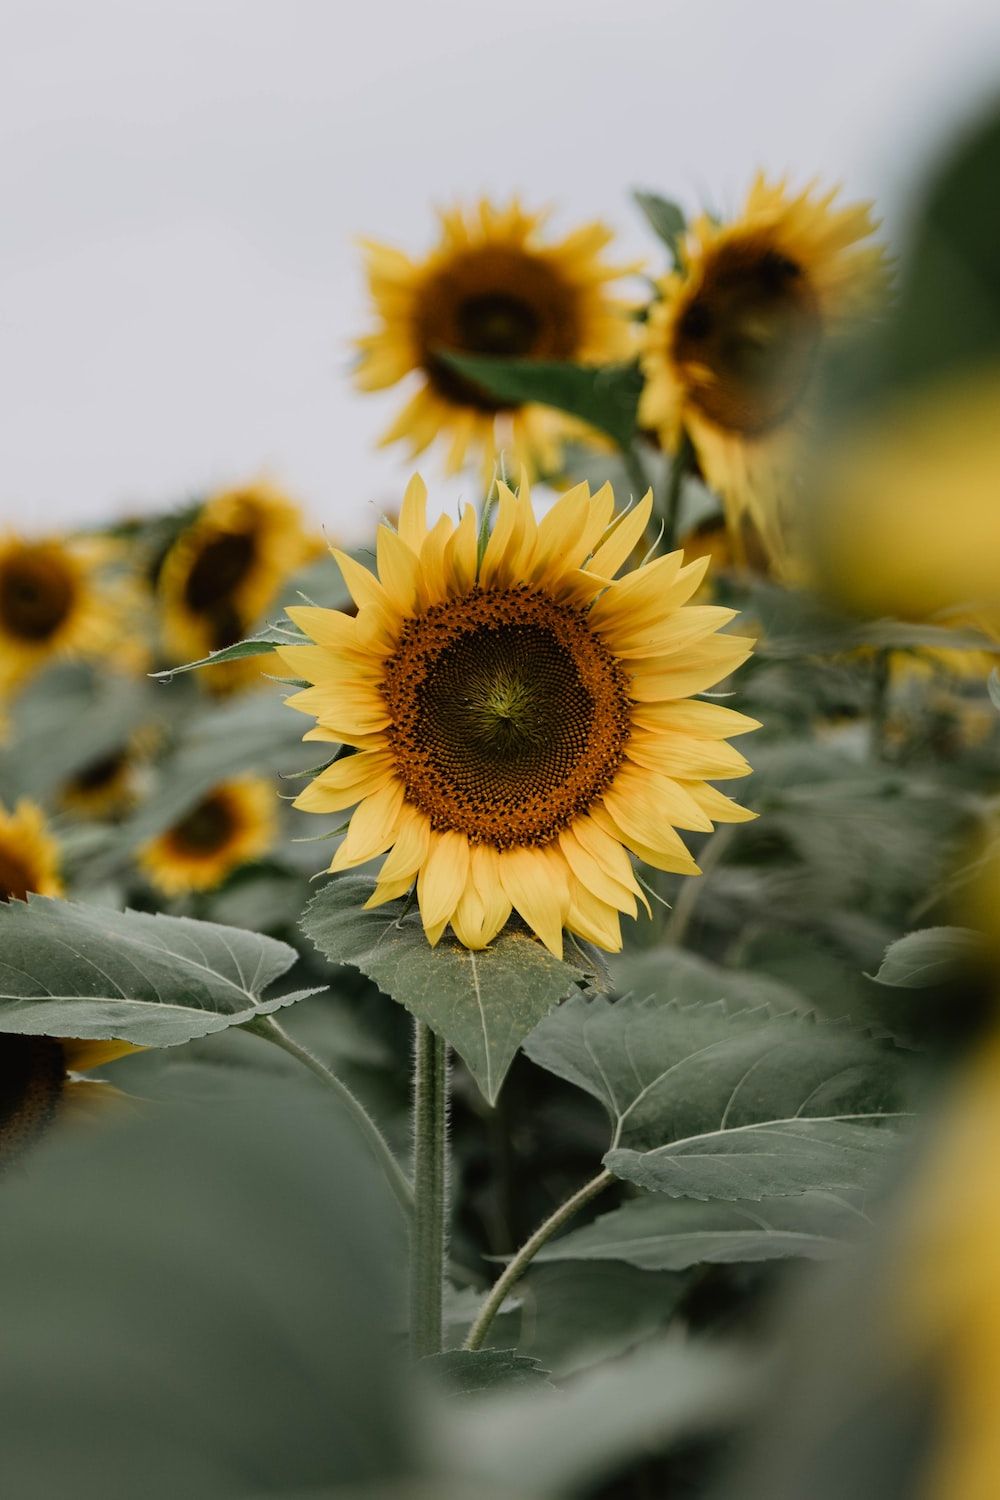 yellow sunflower field photo